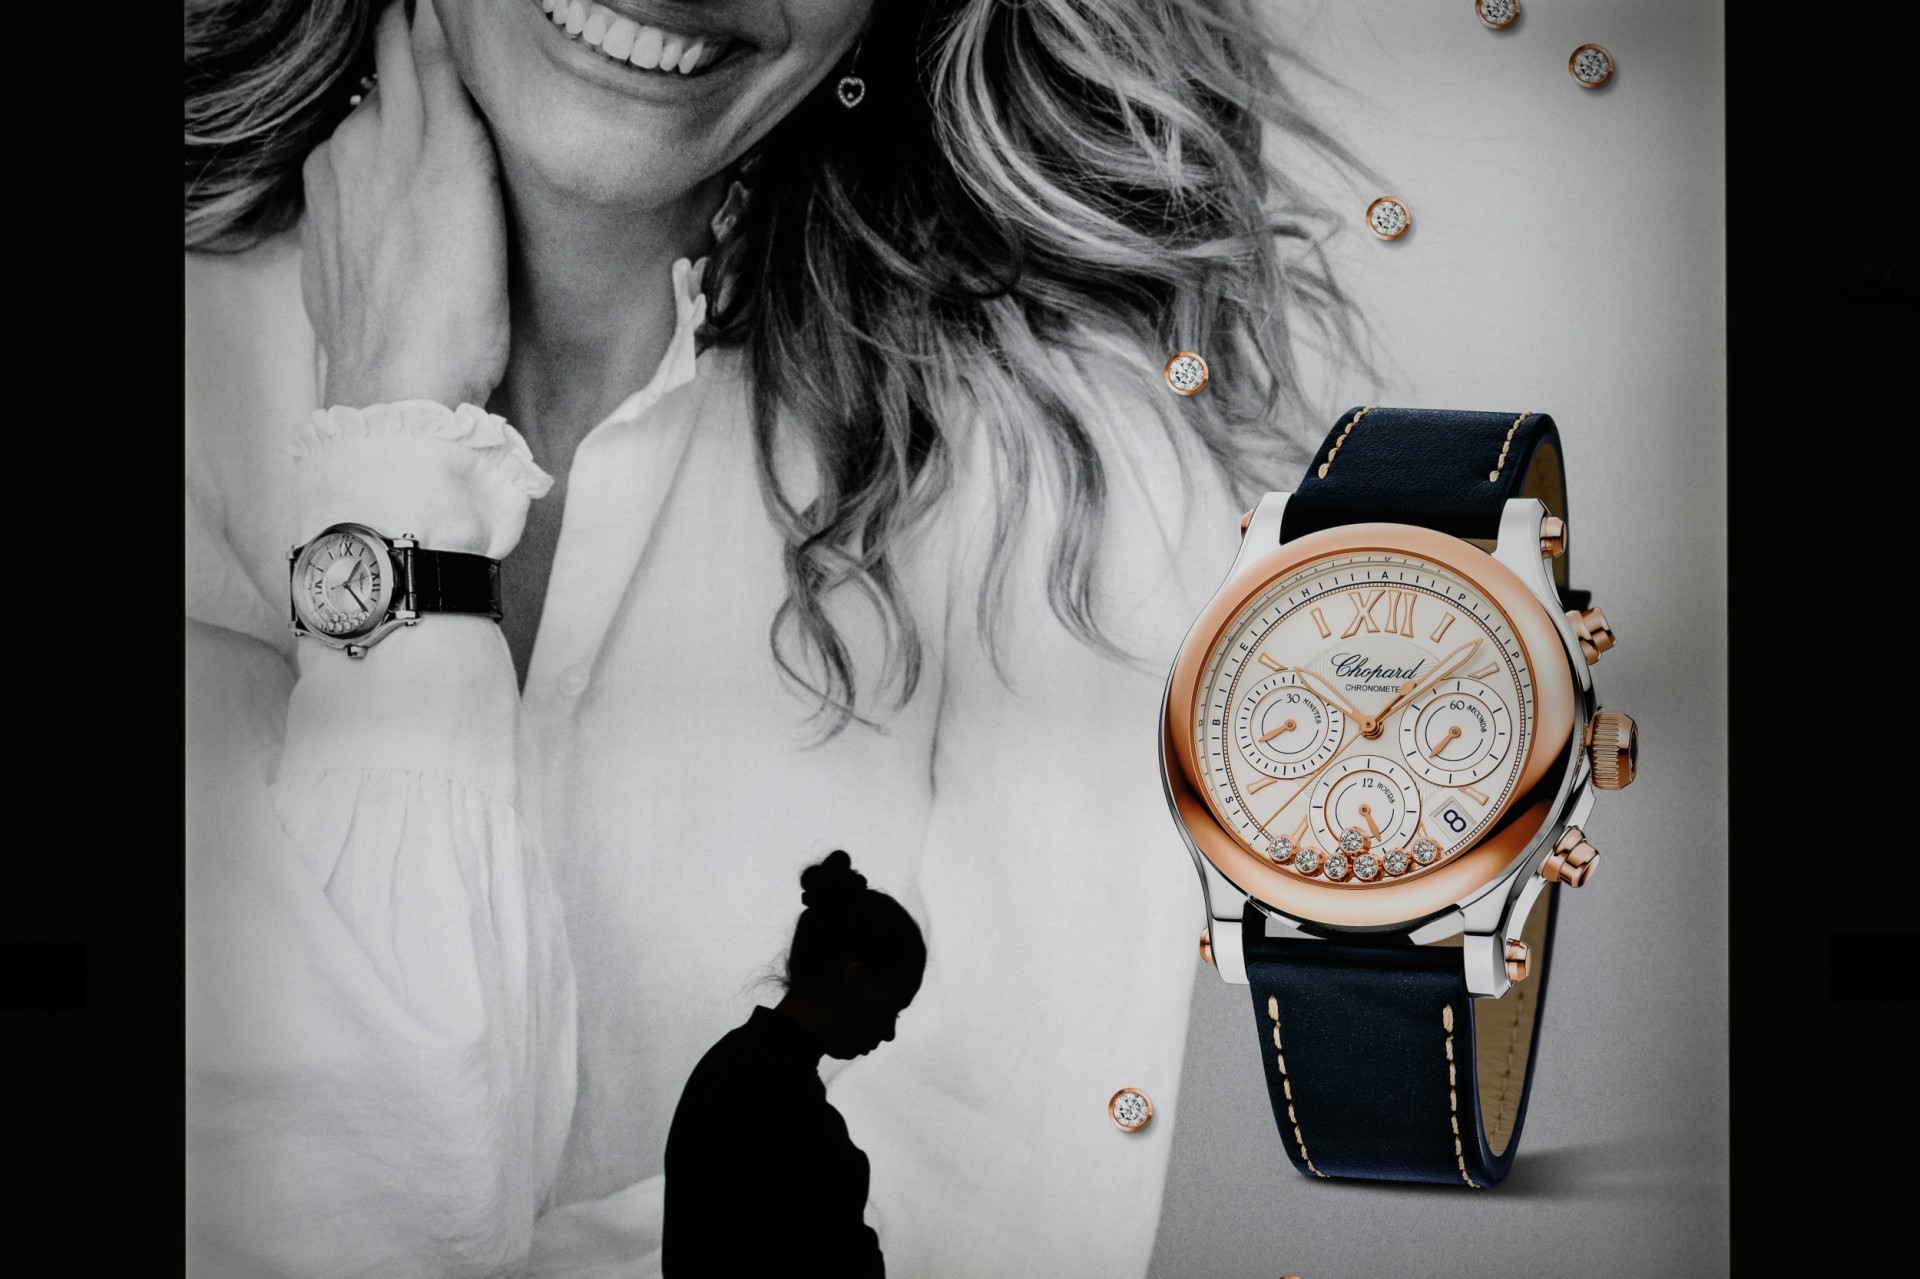 Biển quảng cáo của Chopard, nhà sản xuất và bán lẻ đồng hồ, trang sức và phụ kiện xa xỉ của Thụy Sĩ. Ảnh: AFP